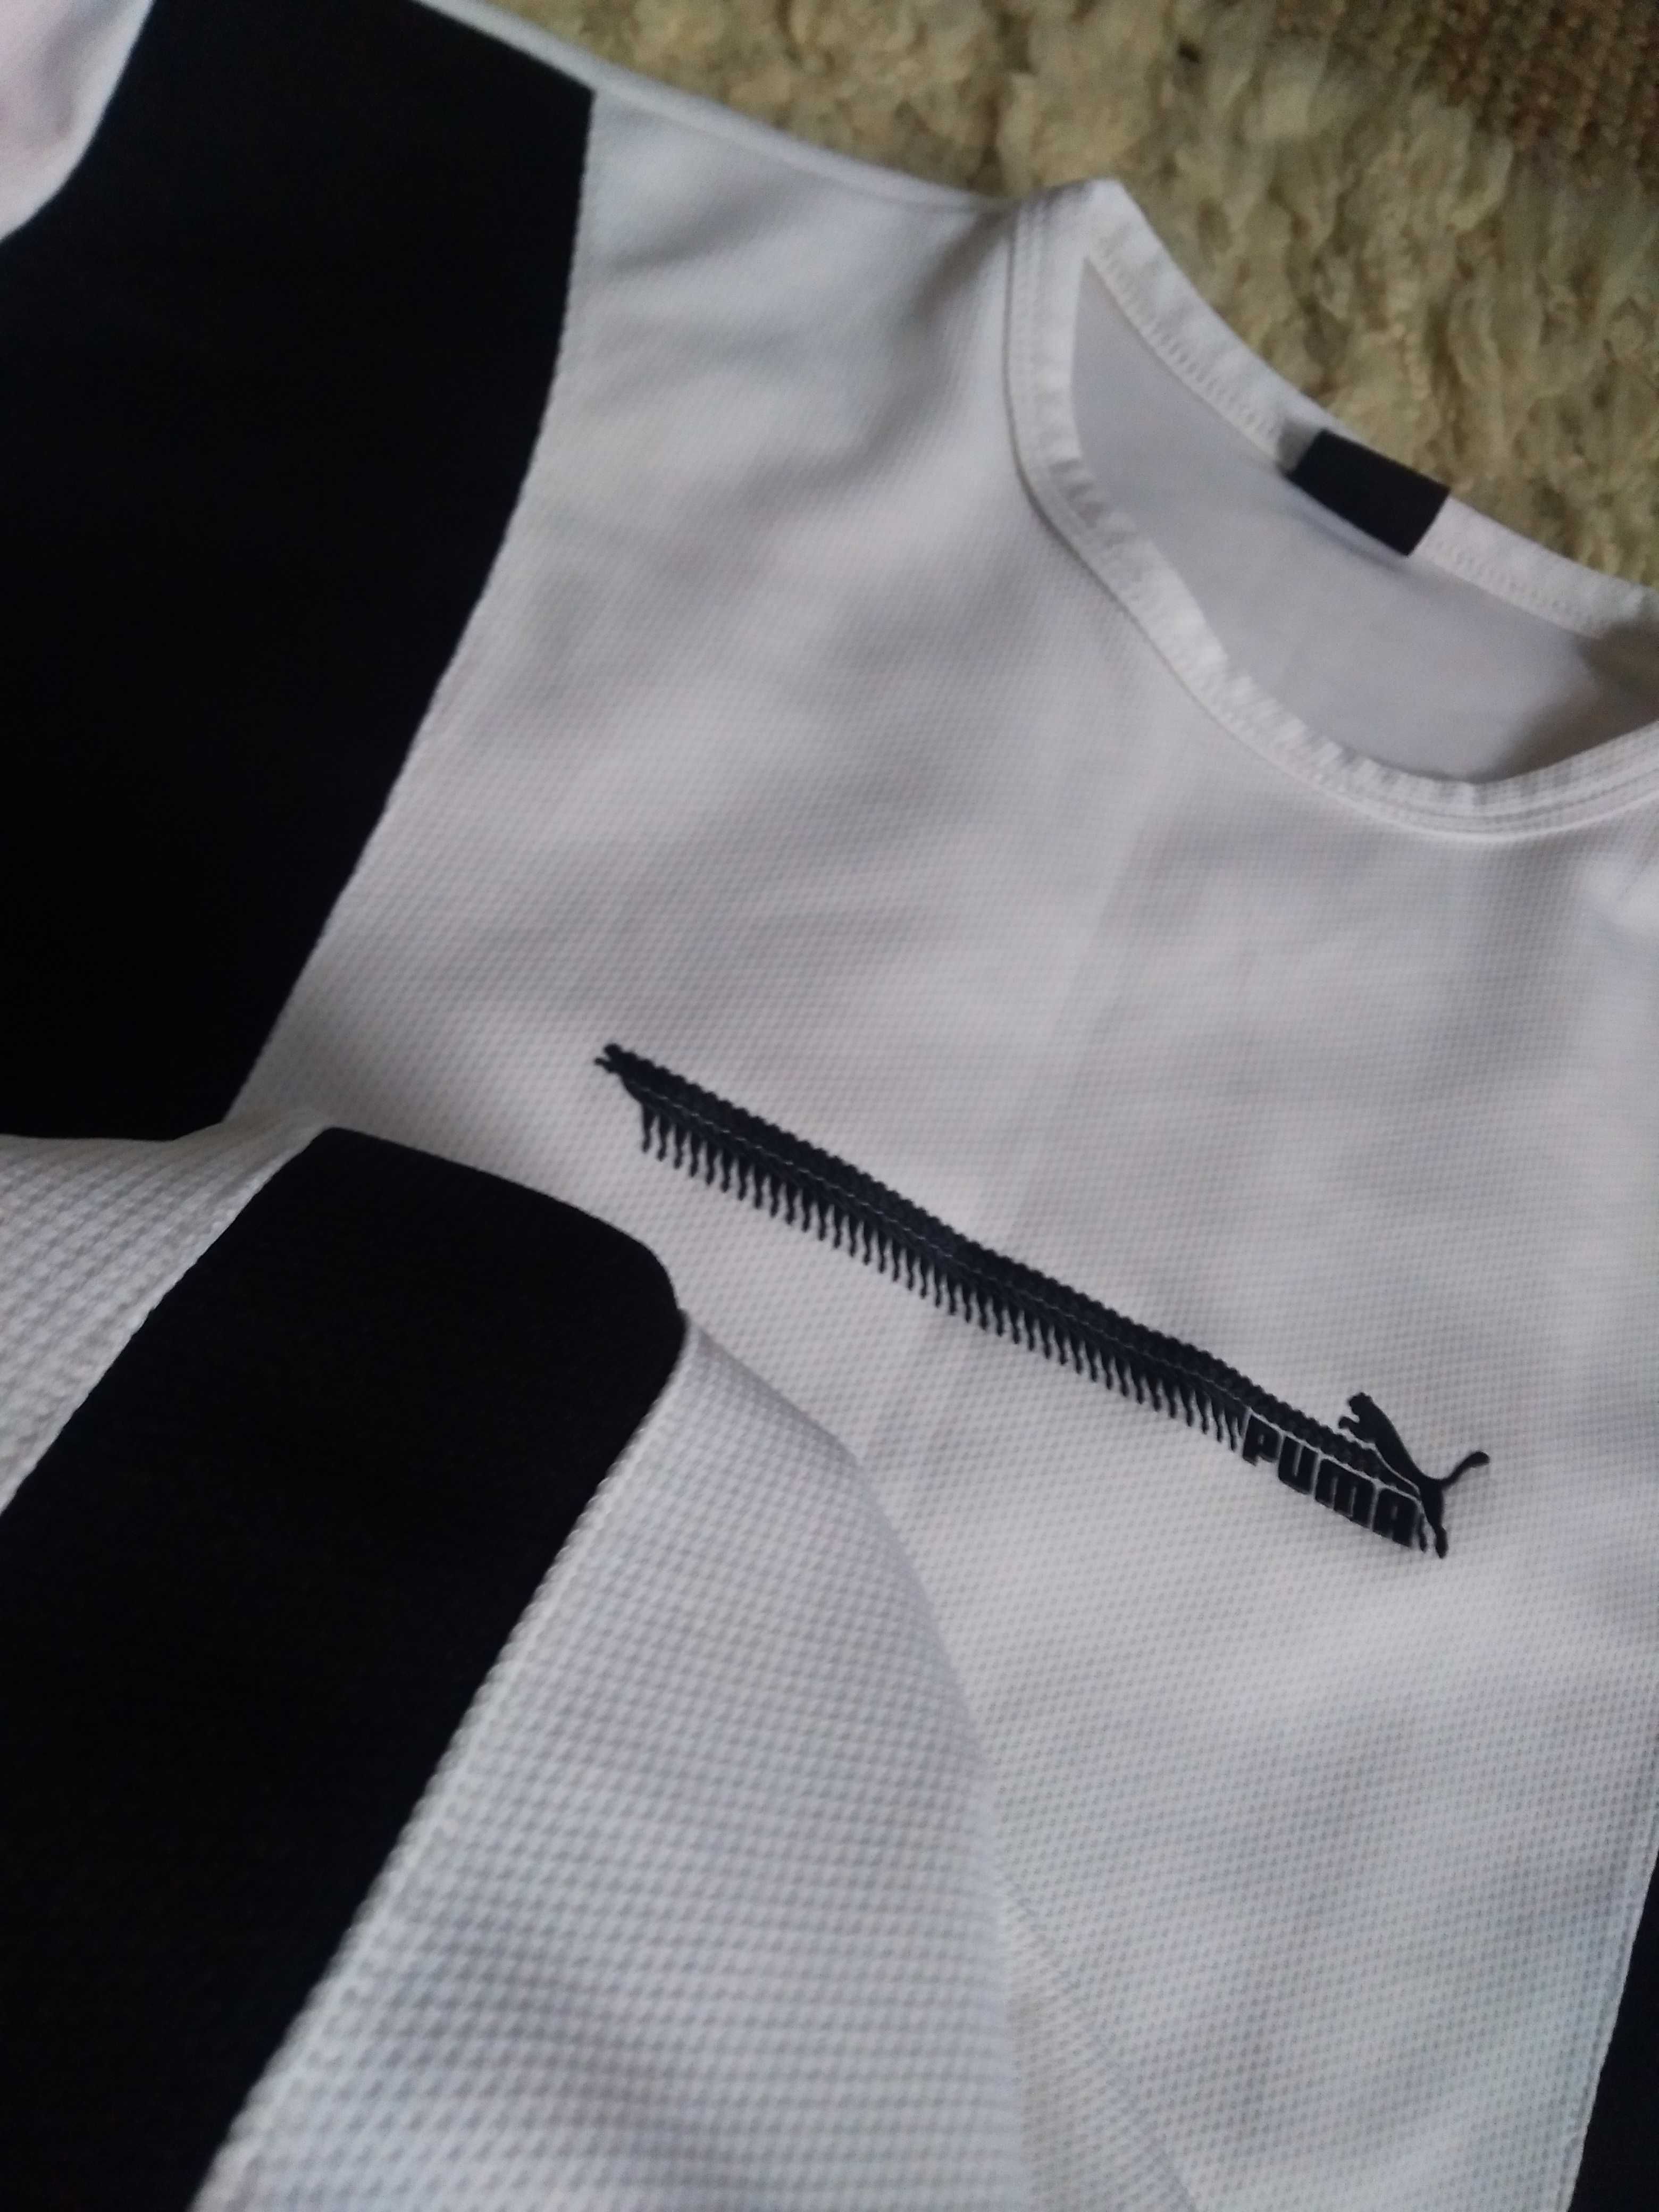 Gratis koszulka sportowa Puma męska rozmiar XL odzież